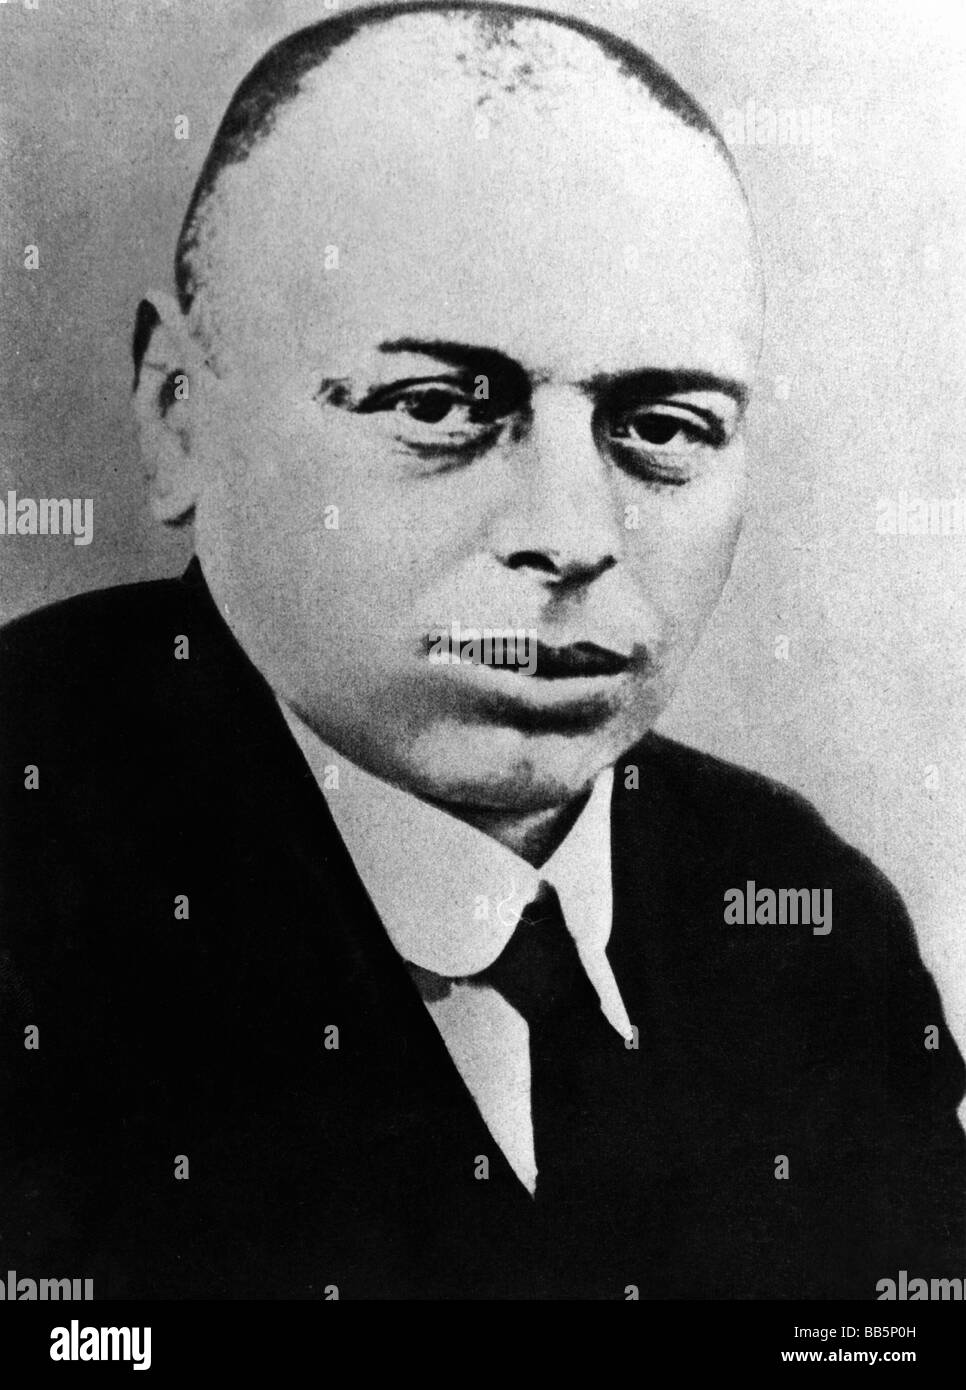 Kun, Bela, 20.2.1886 - 30.11.1939, politico ungherese (Partito comunista), leader della Repubblica sovietica ungherese 1919, ritratto, Foto Stock